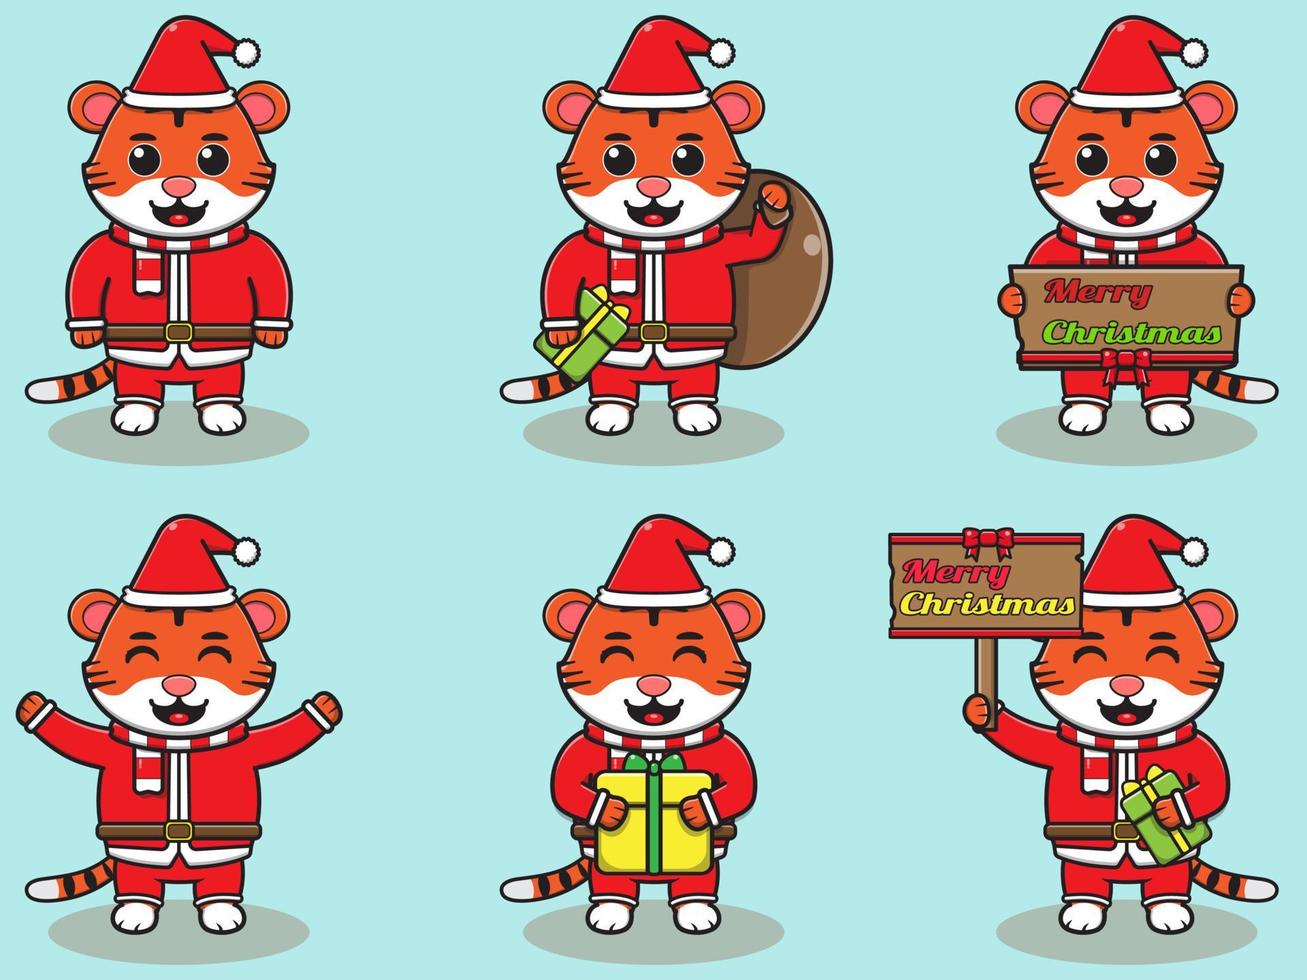 Vector illustration of cute Tiger Santa mascot or character.